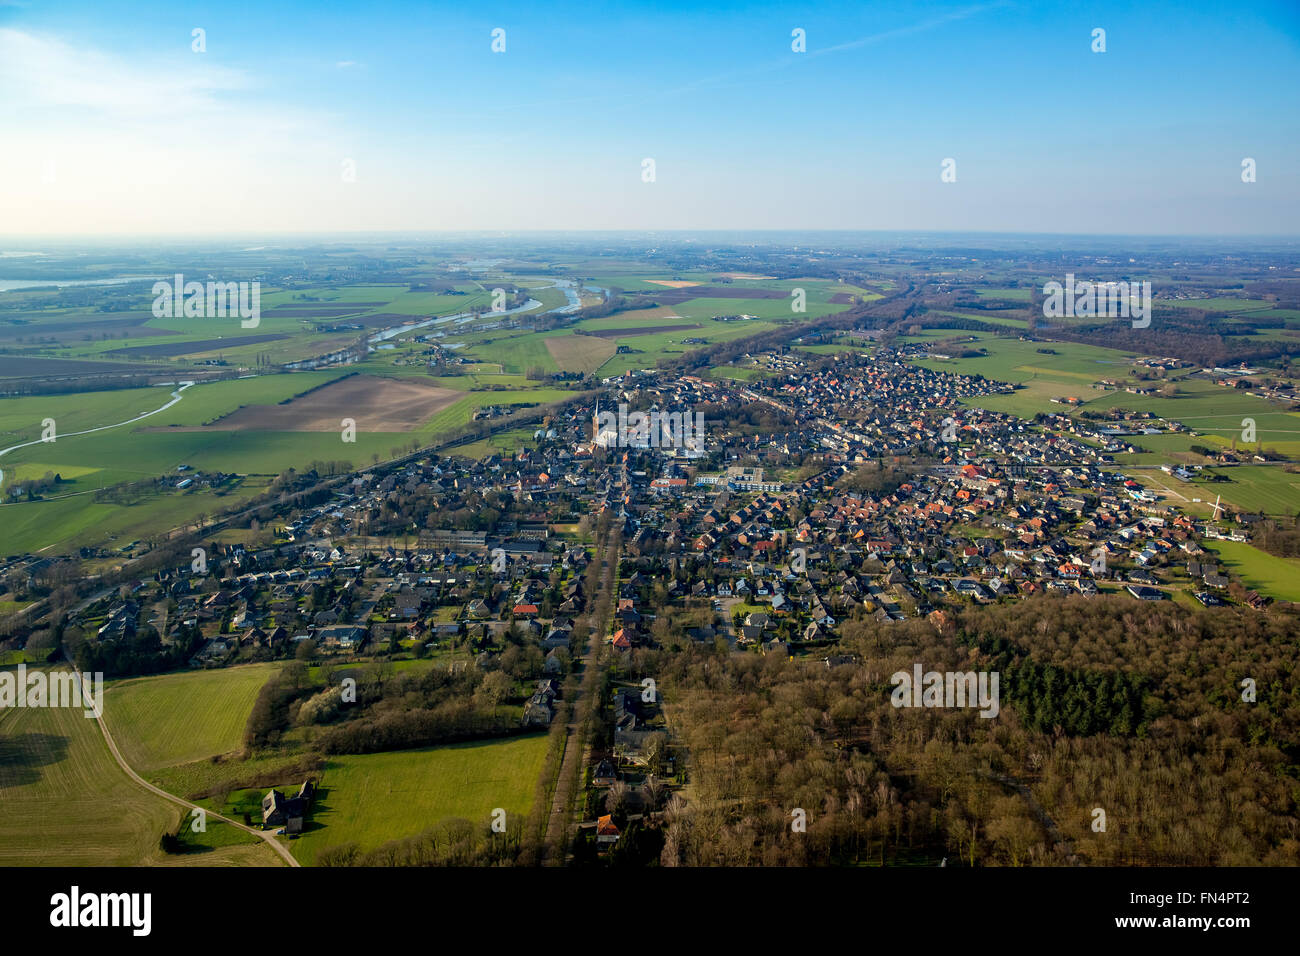 Aerial view, Elten and Hoch-Elten, Emmerich, Lower Rhine region, North Rhine-Westphalia, Germany, Europe, Aerial view, Stock Photo